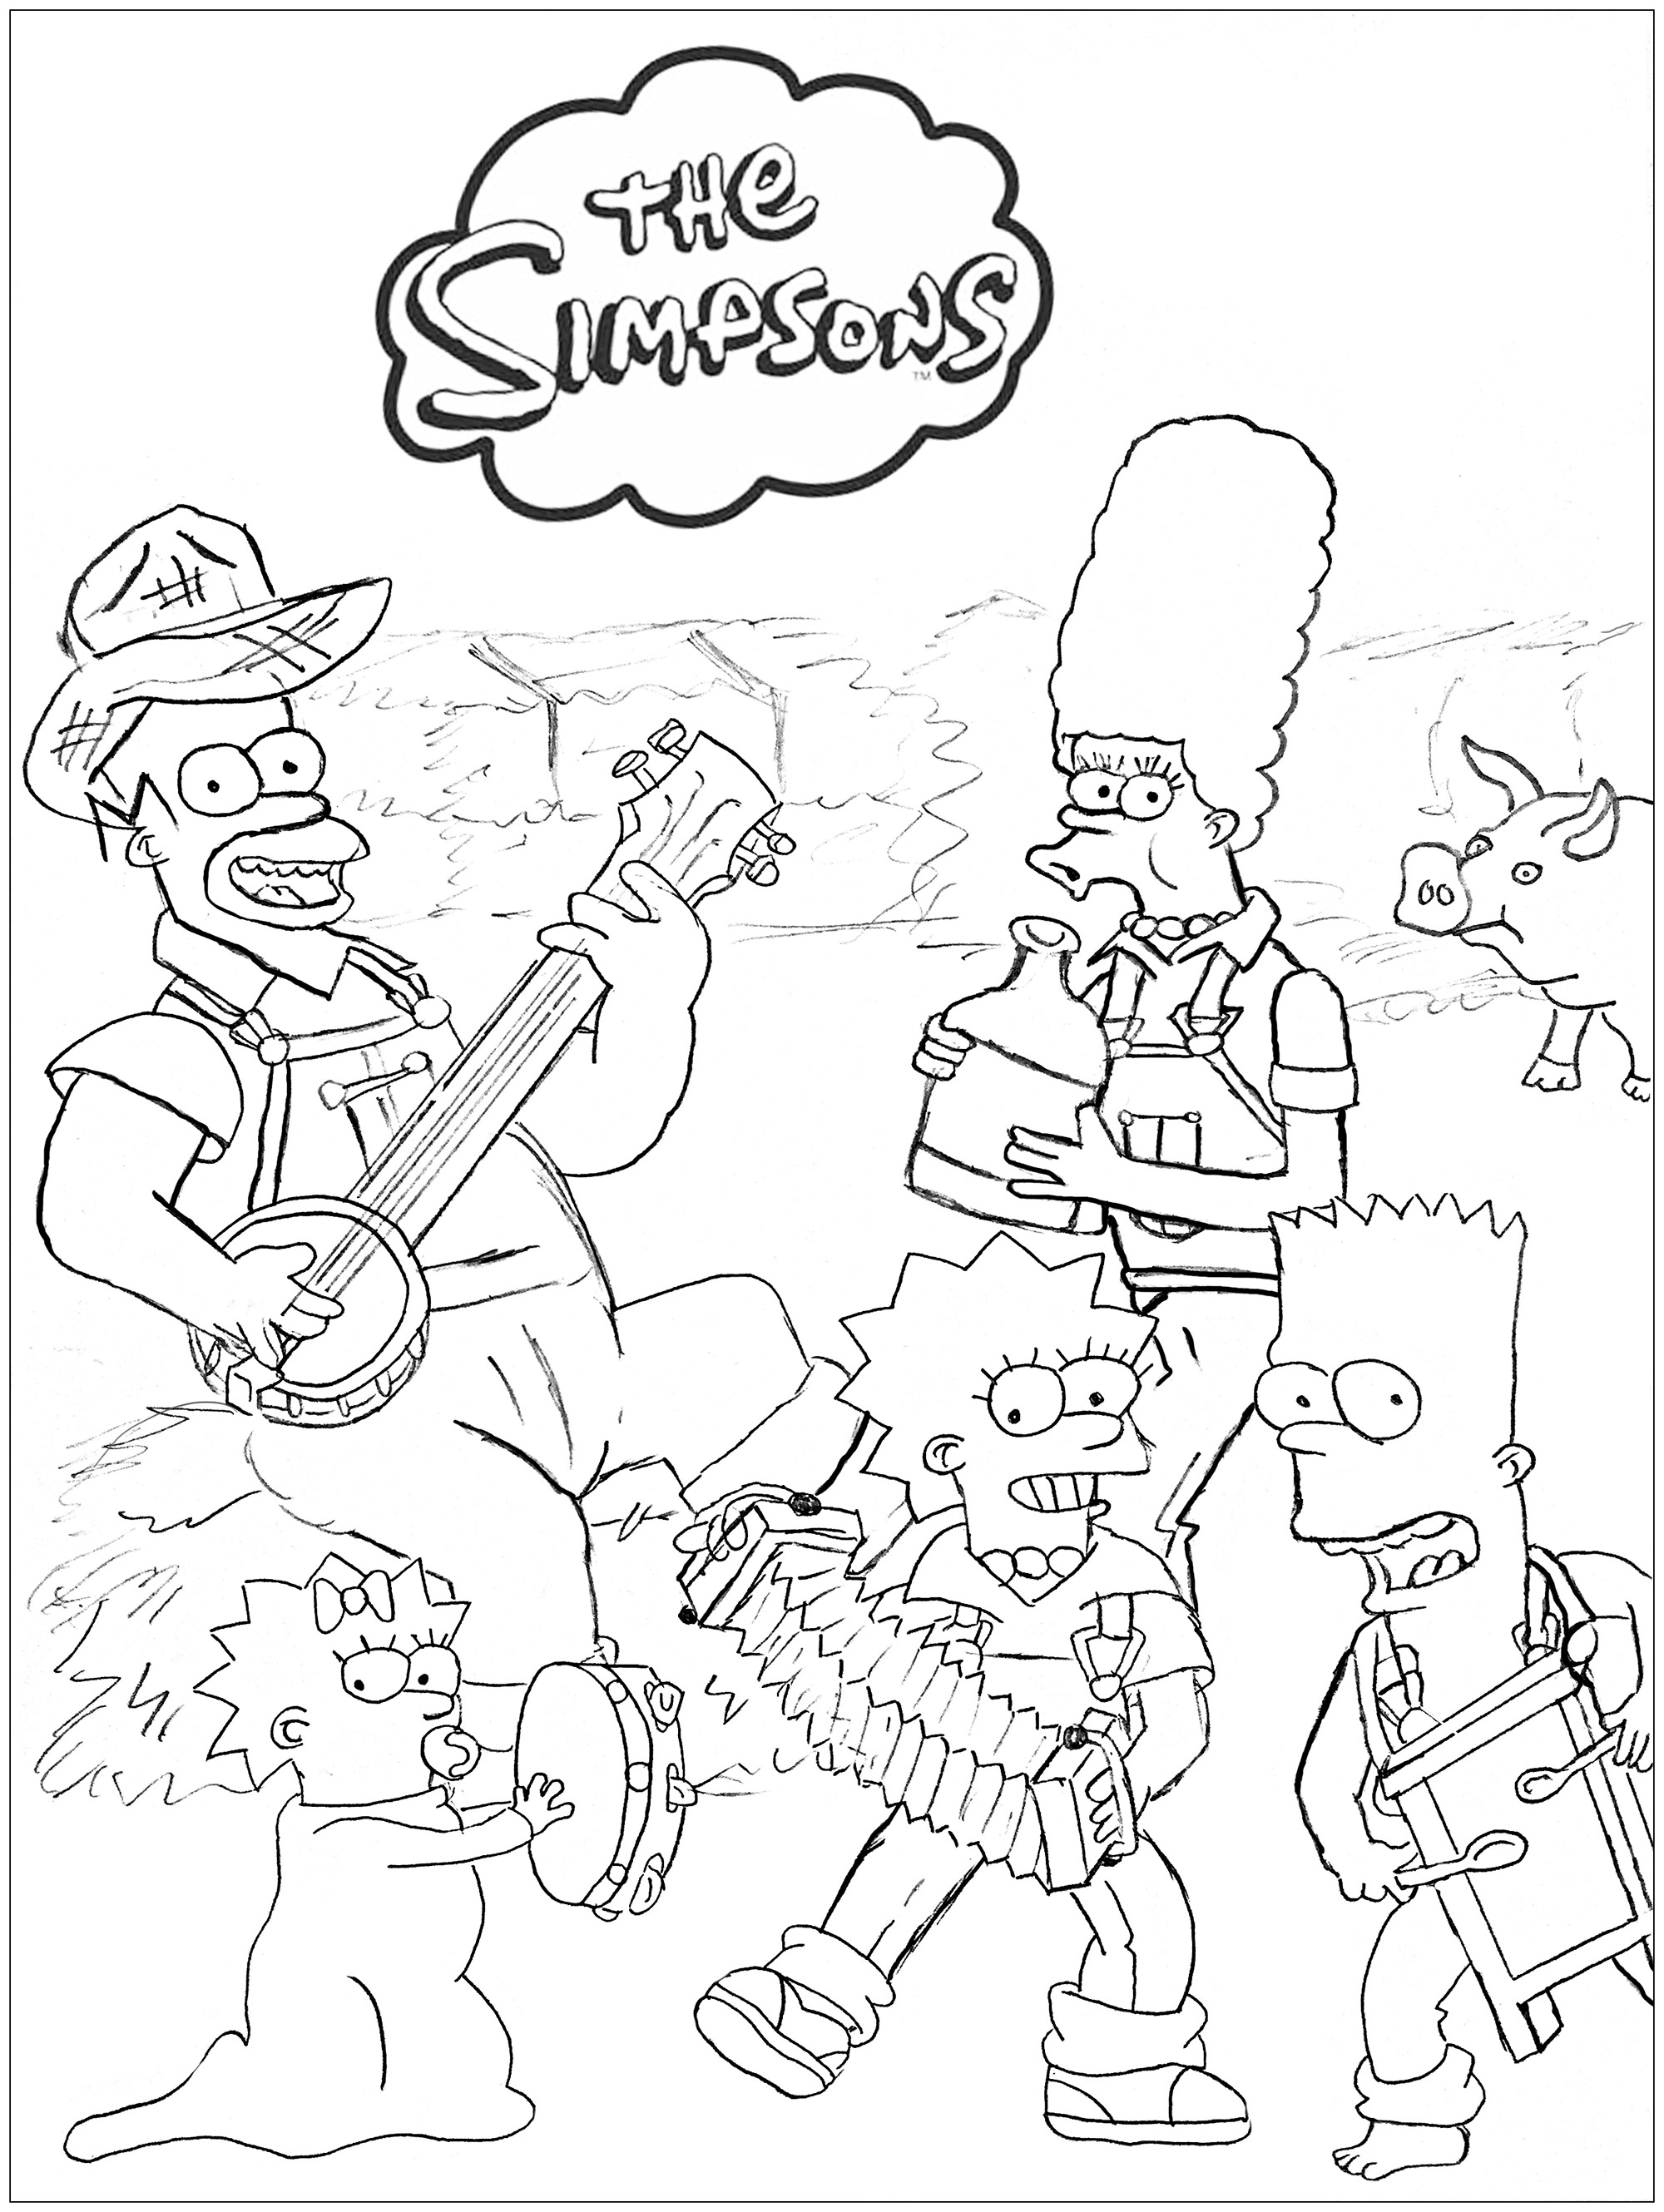 Les Simpsons à la ferme, dessin original inspiré des célèbres personnages créés par Matt Groening, Artiste : Romain Delcroix